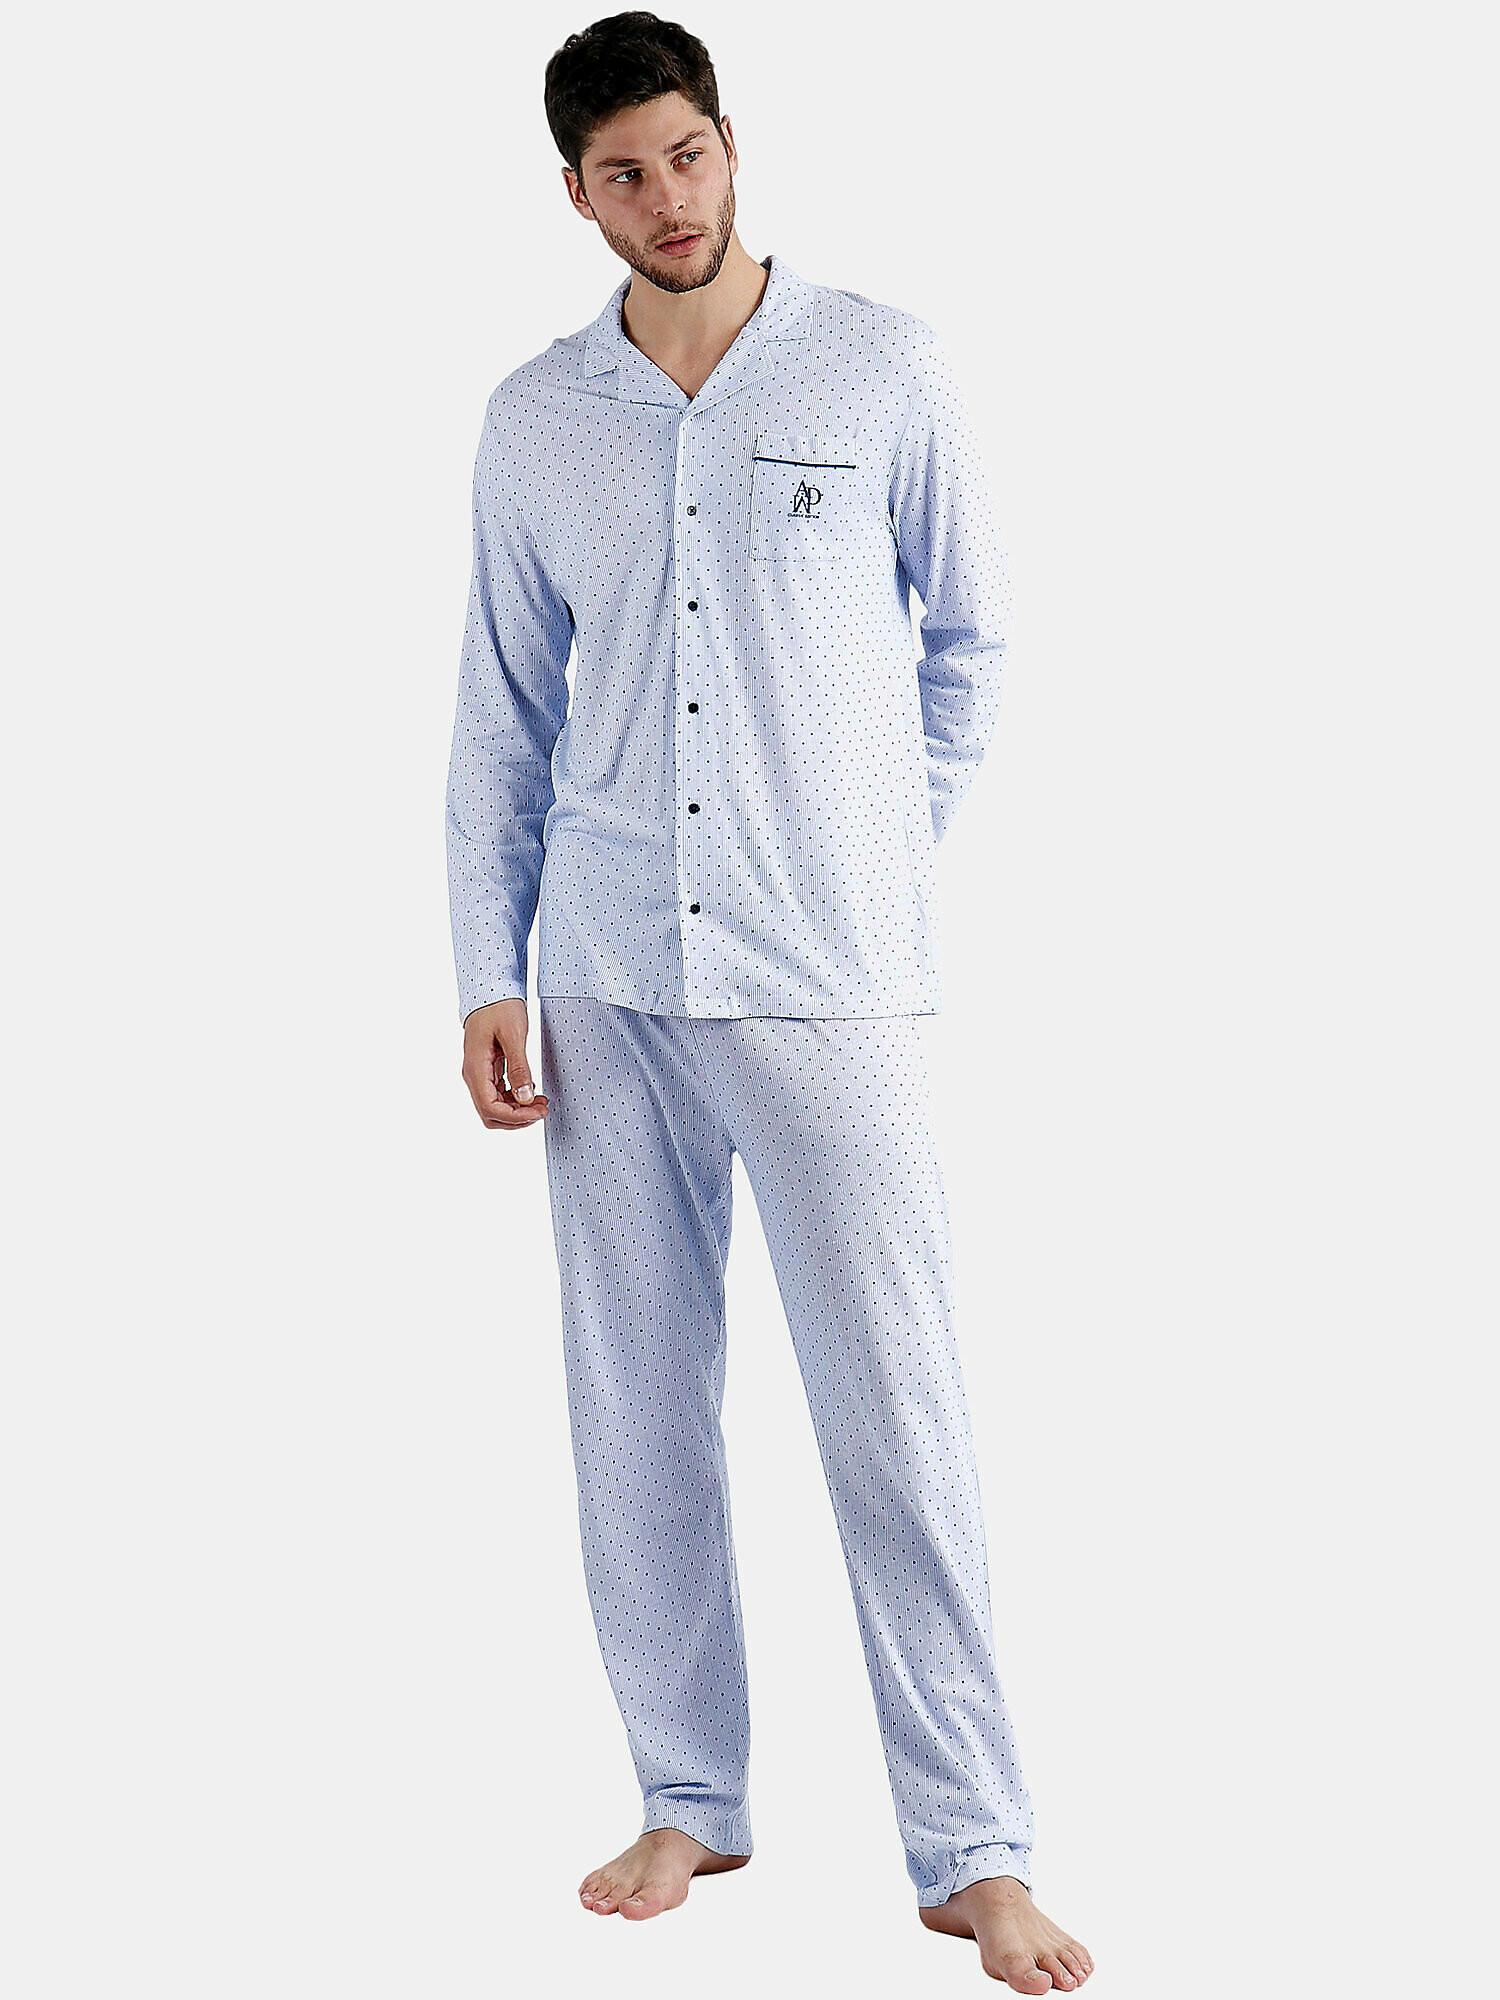 Pyjama Hausanzug Hose Und Hemd Stripes And Dots Herren Blau XXL von Admas